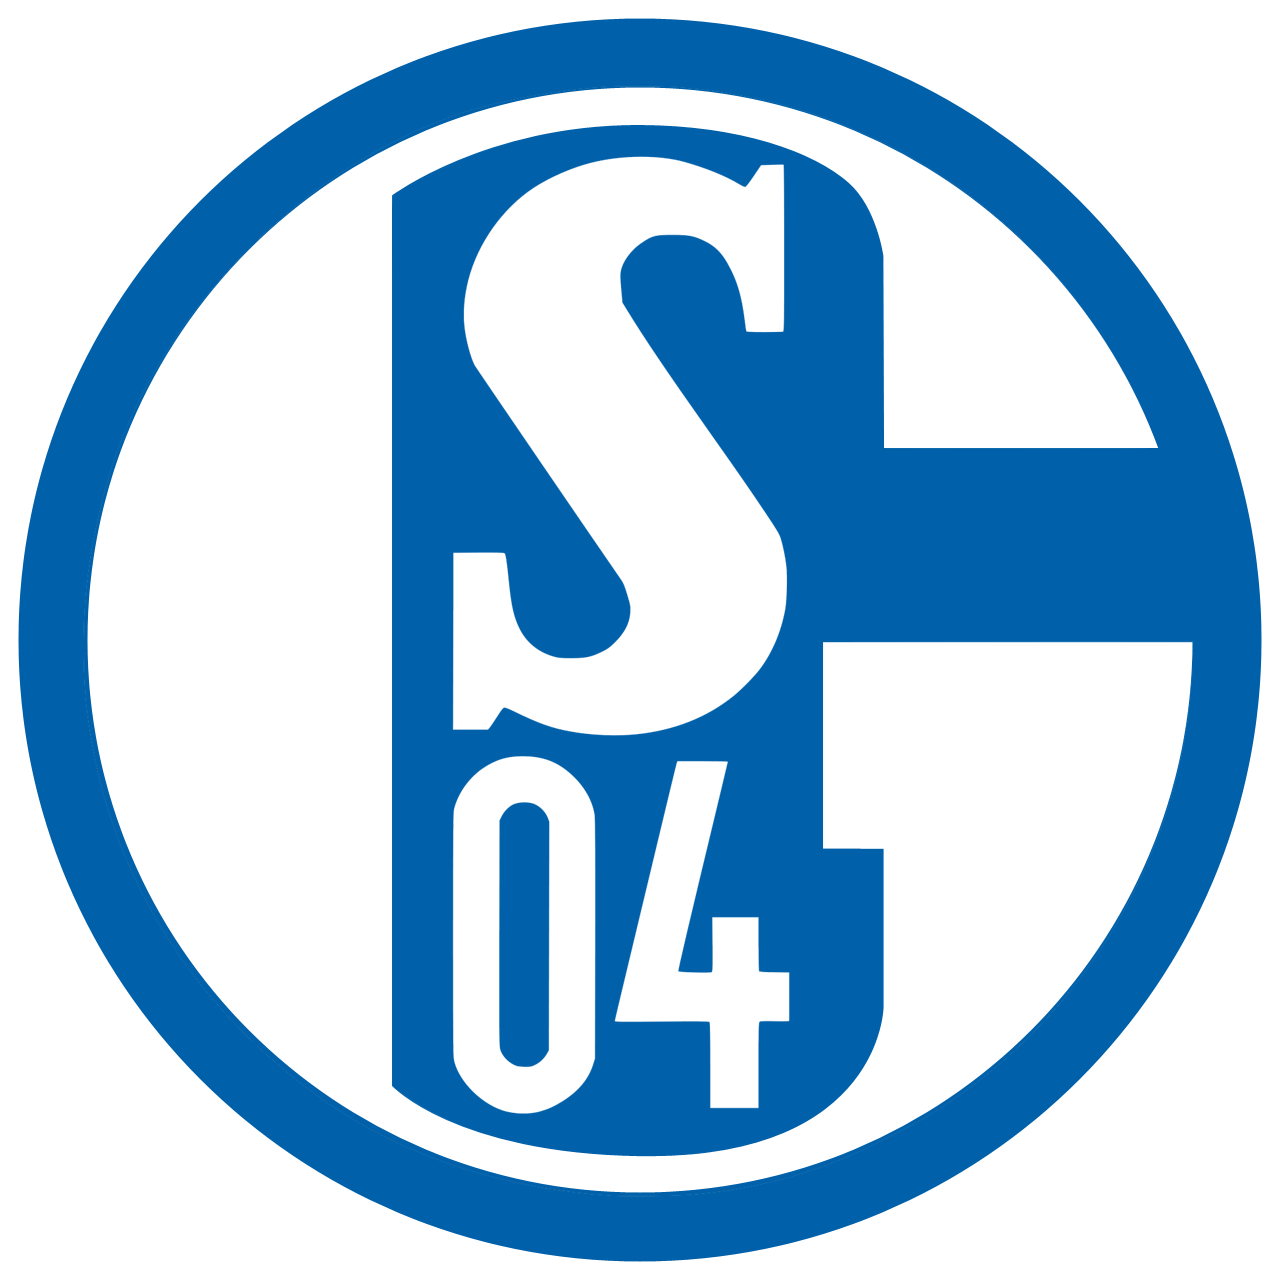 Fc Schalke 04 Wallpaper - Schalke 04 Logo Hd , HD Wallpaper & Backgrounds